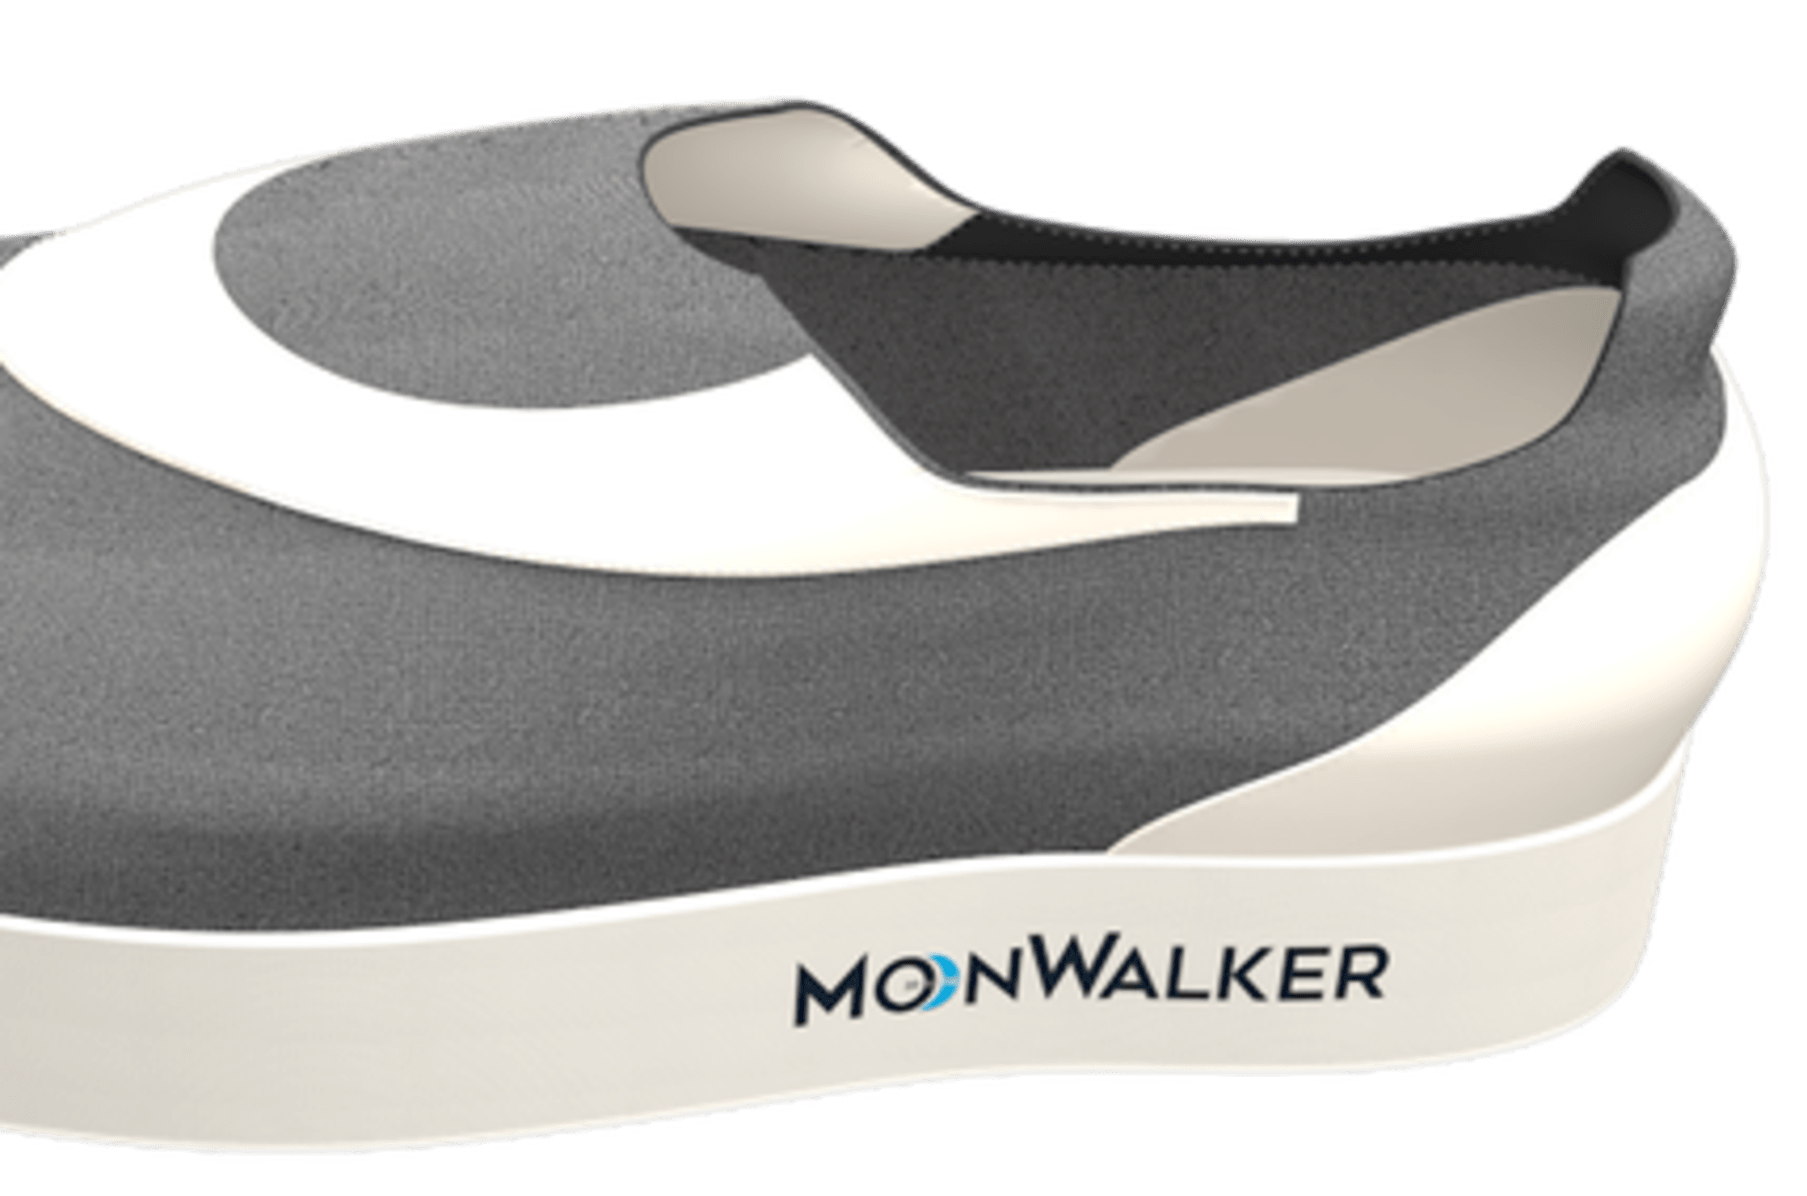 moonwalker shoes amazon